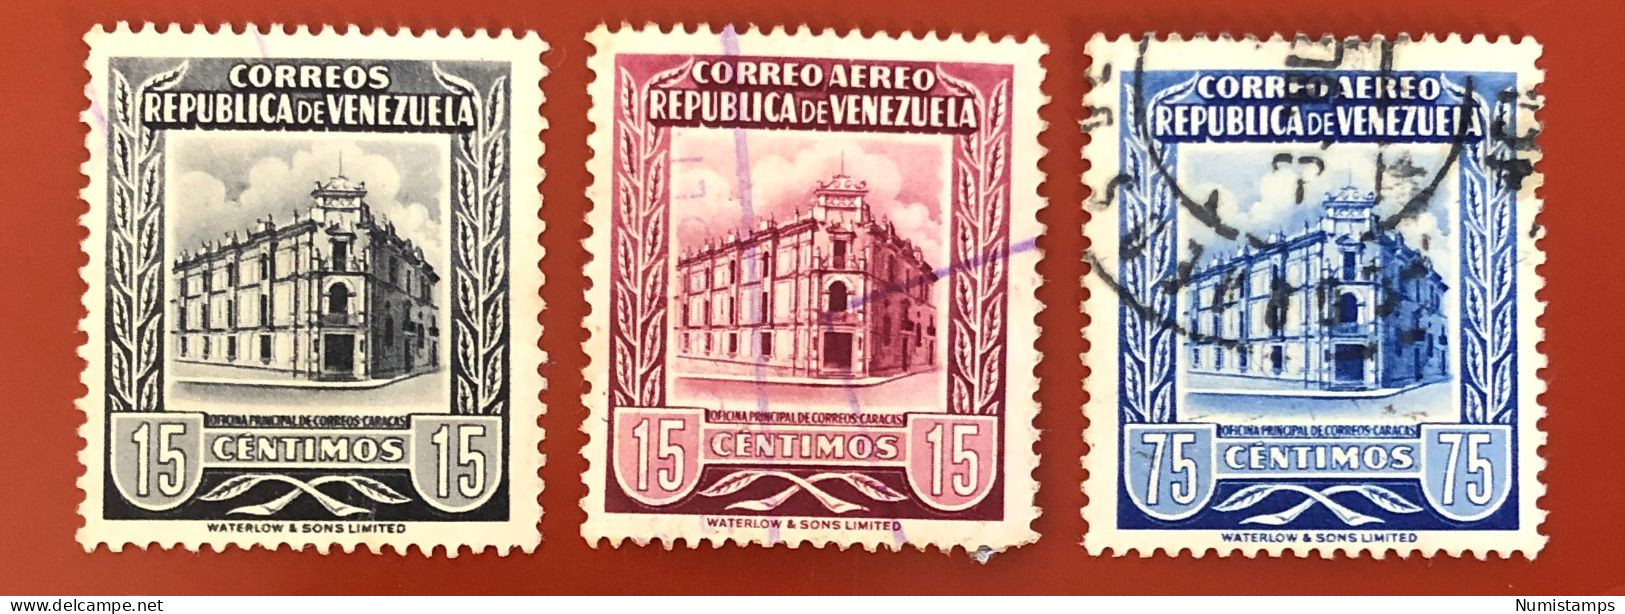 Venezuela - Caracas Main Post Office - 1955 - Venezuela